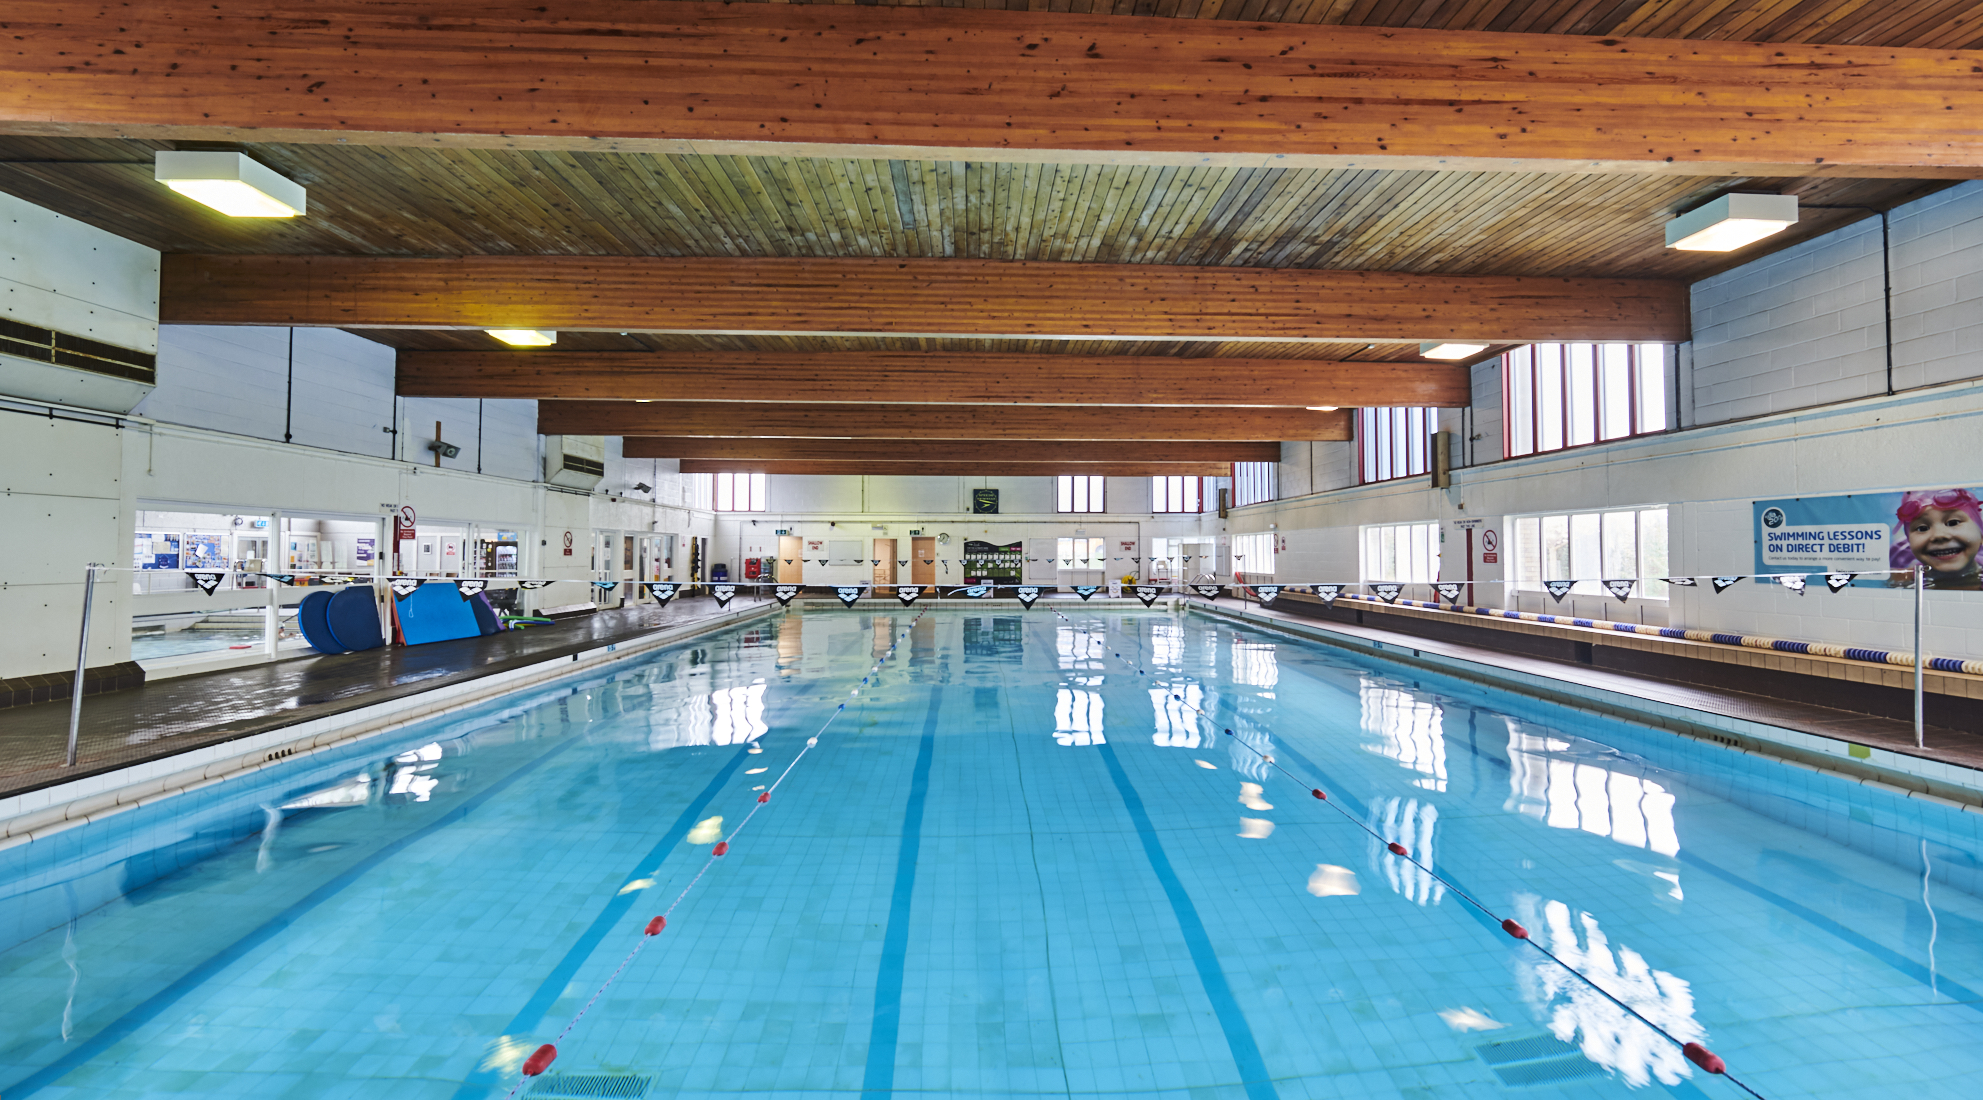 Brough Park Swimming Pool